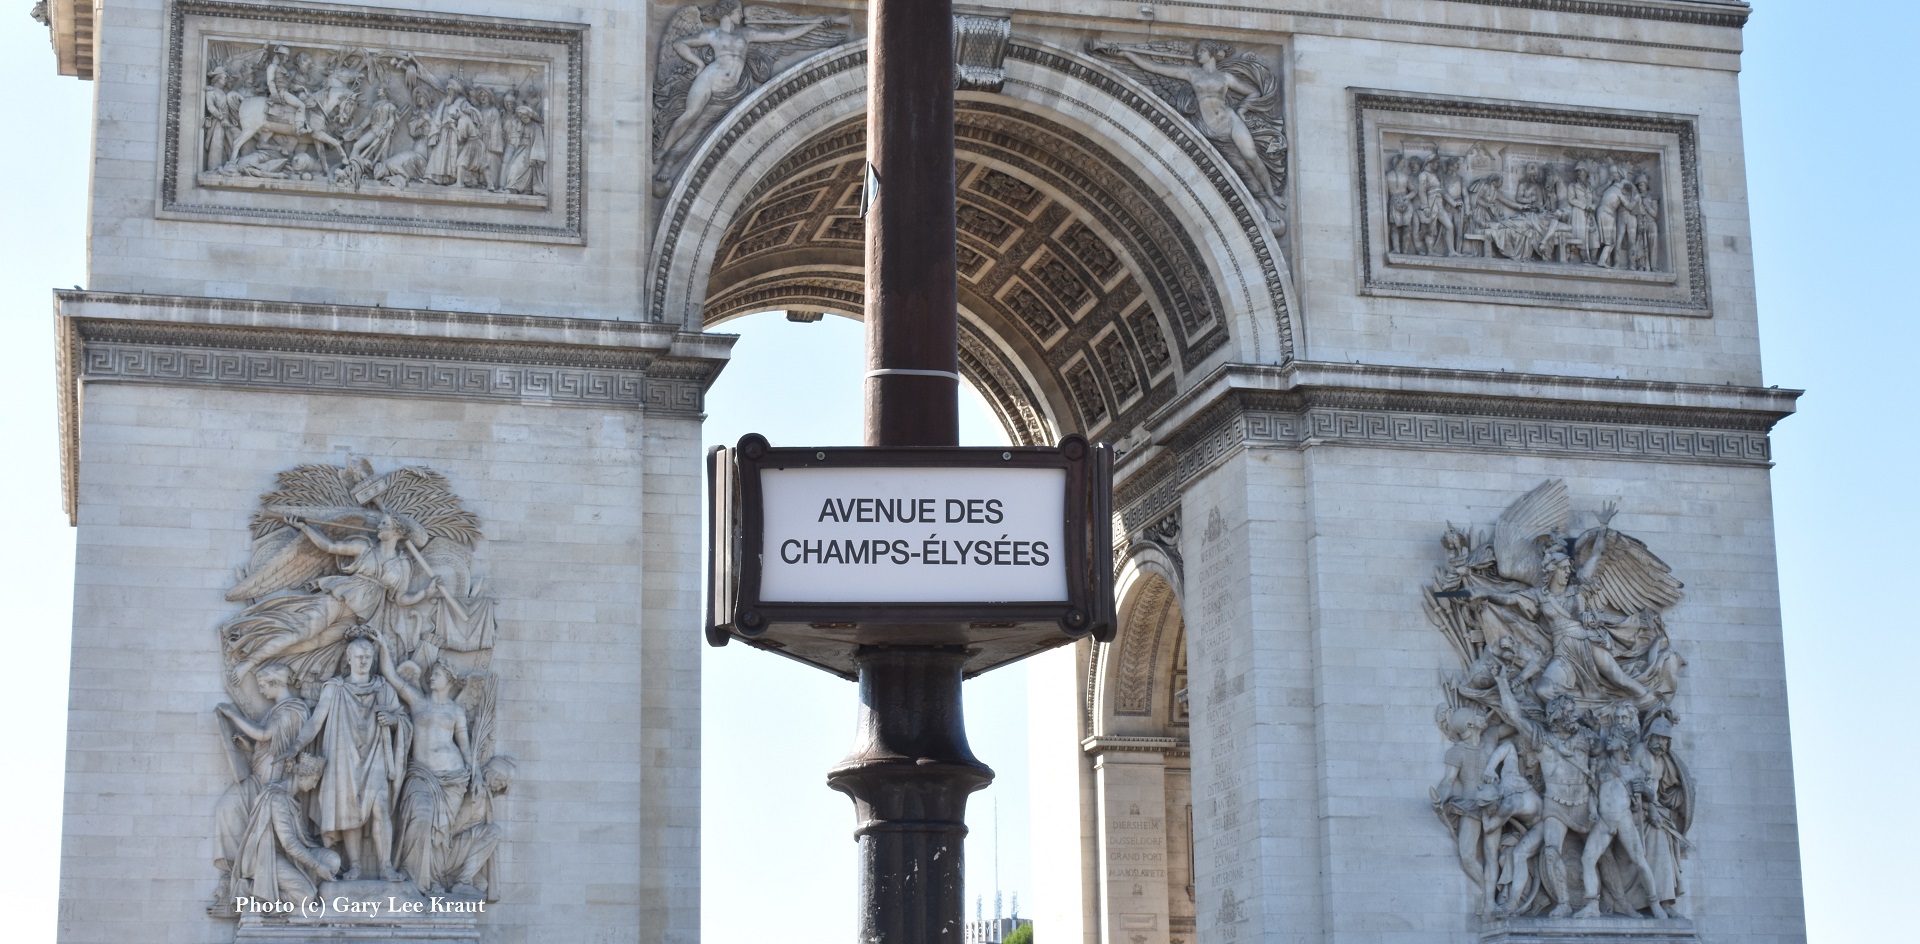 Paris Walking Tour Champs-Elysees from Place de la Concorde to the Arc de Triomphe, GLKraut Voicemap